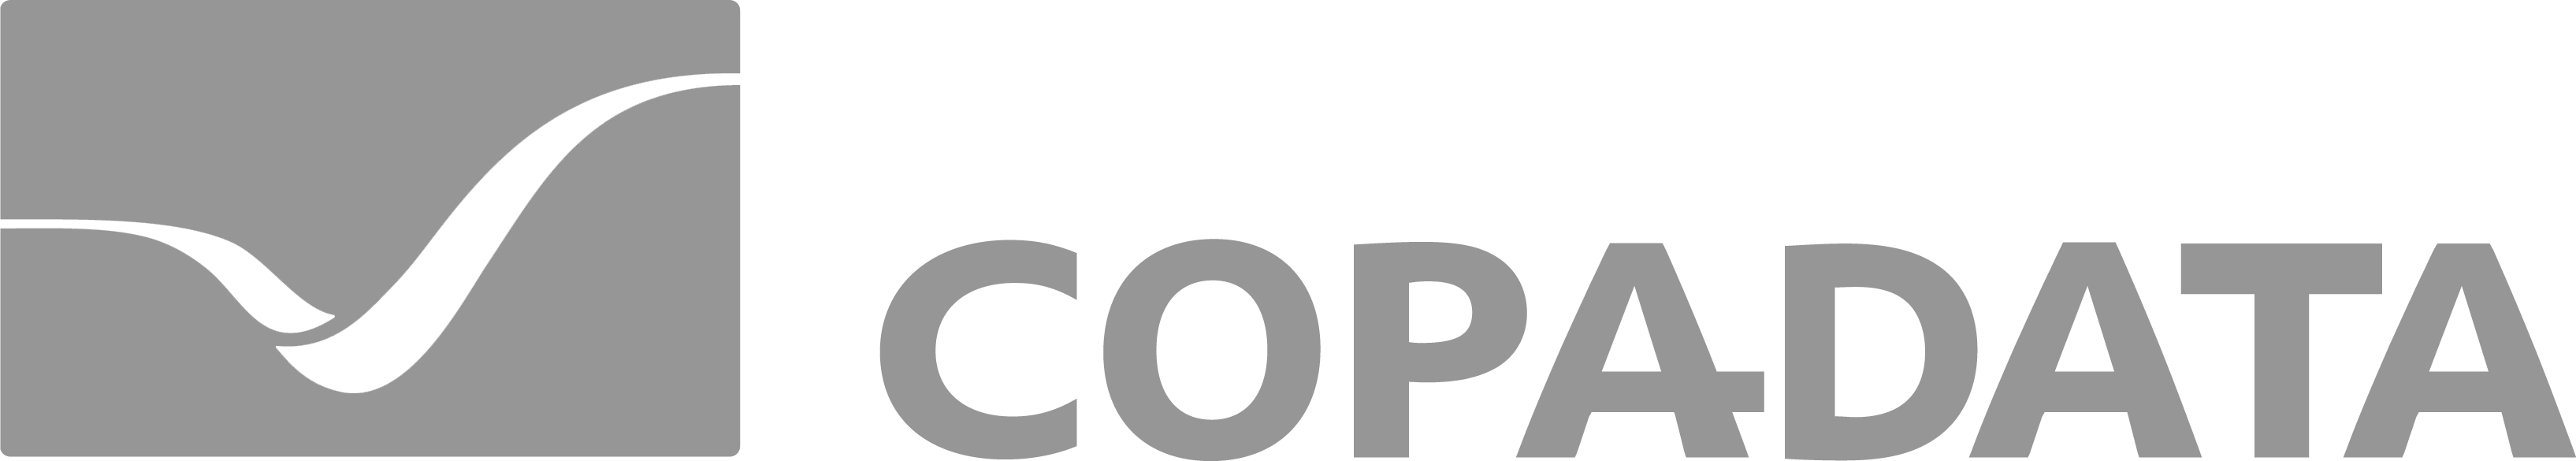 CopaData_Logo